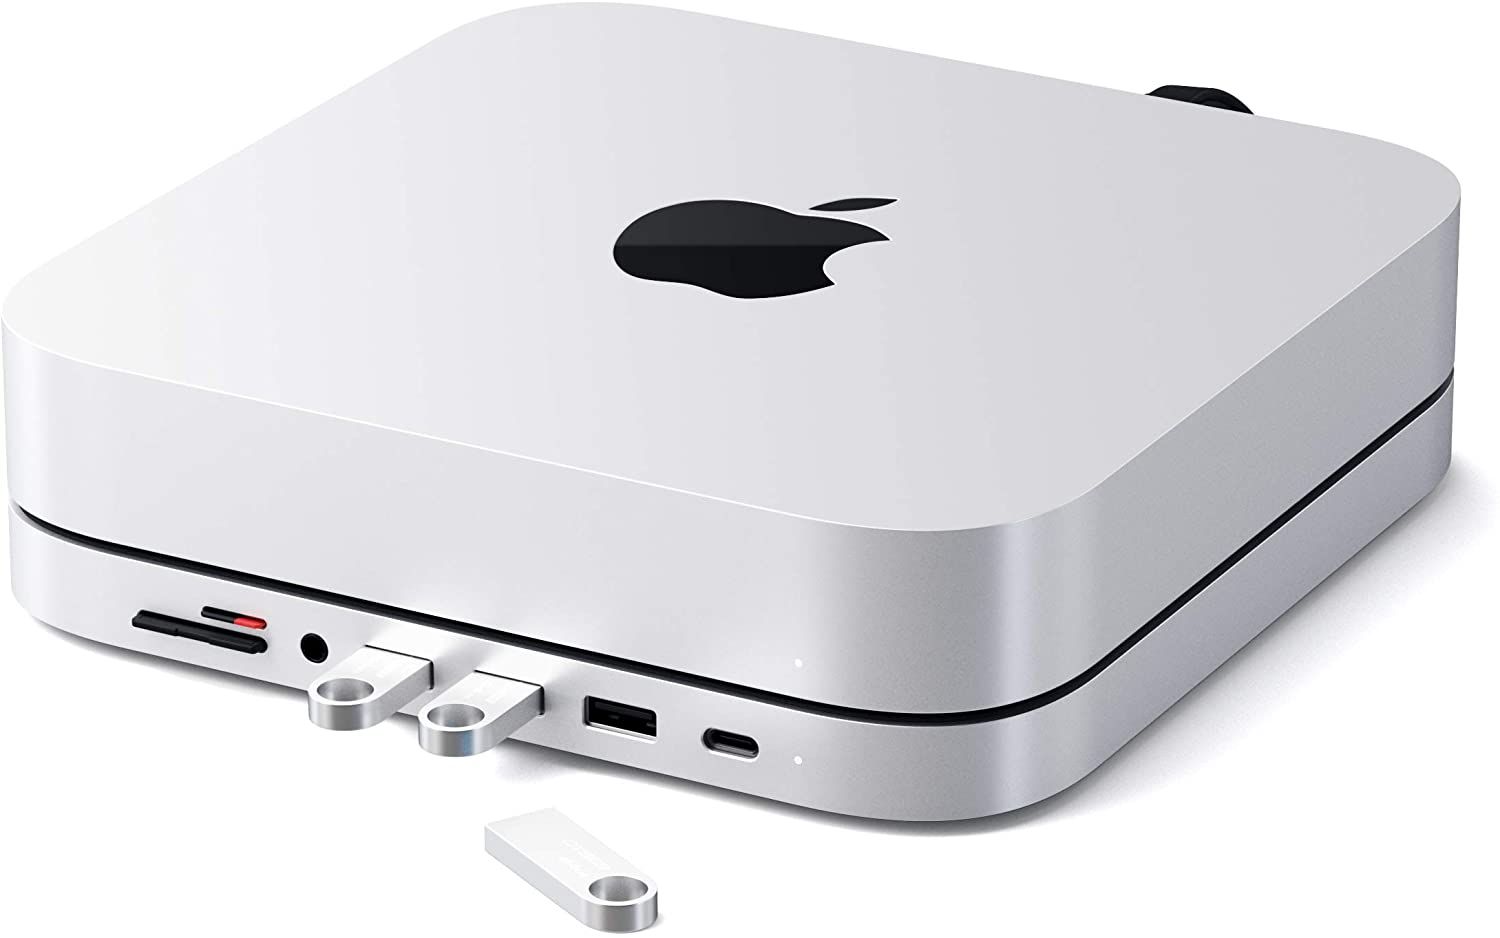 The 7 Best Mac Mini Accessories